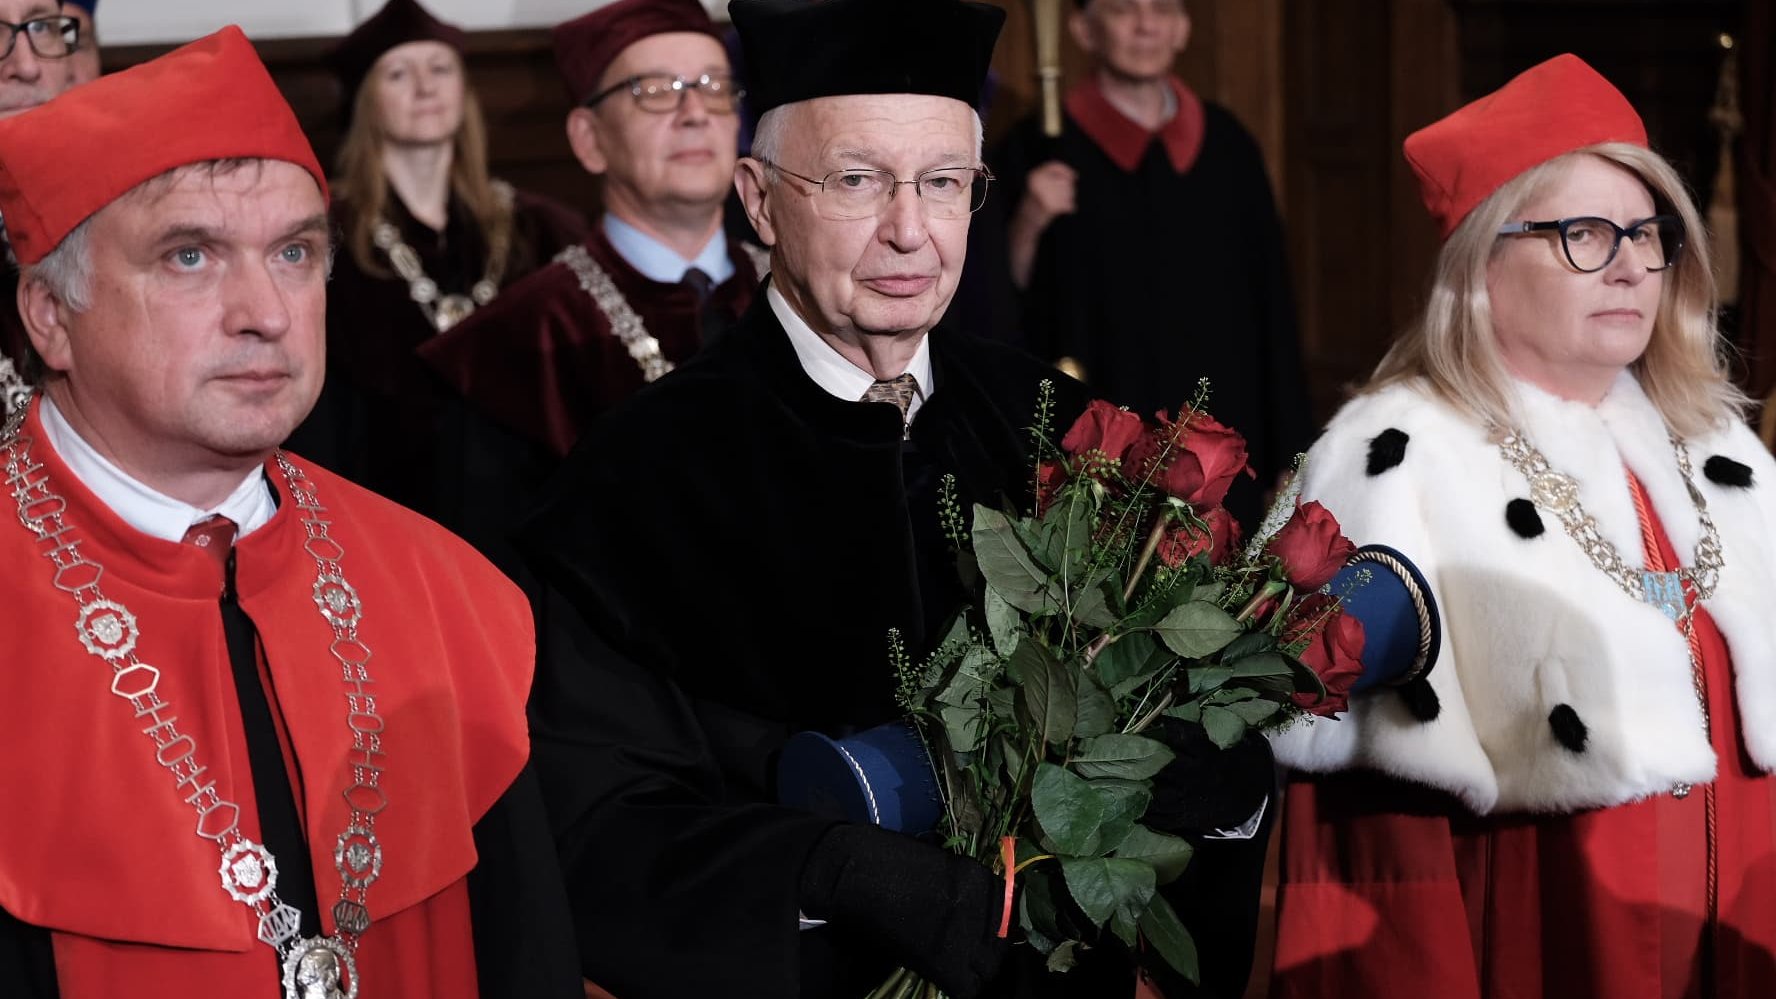 zdjęcie z uroczystego nadania tytułu doktora honoris causa UAM Prof. Jean-Marie Lehnowi, przedstawia laureata w czarnej todze, z bukietem kwiatów - grafika artykułu